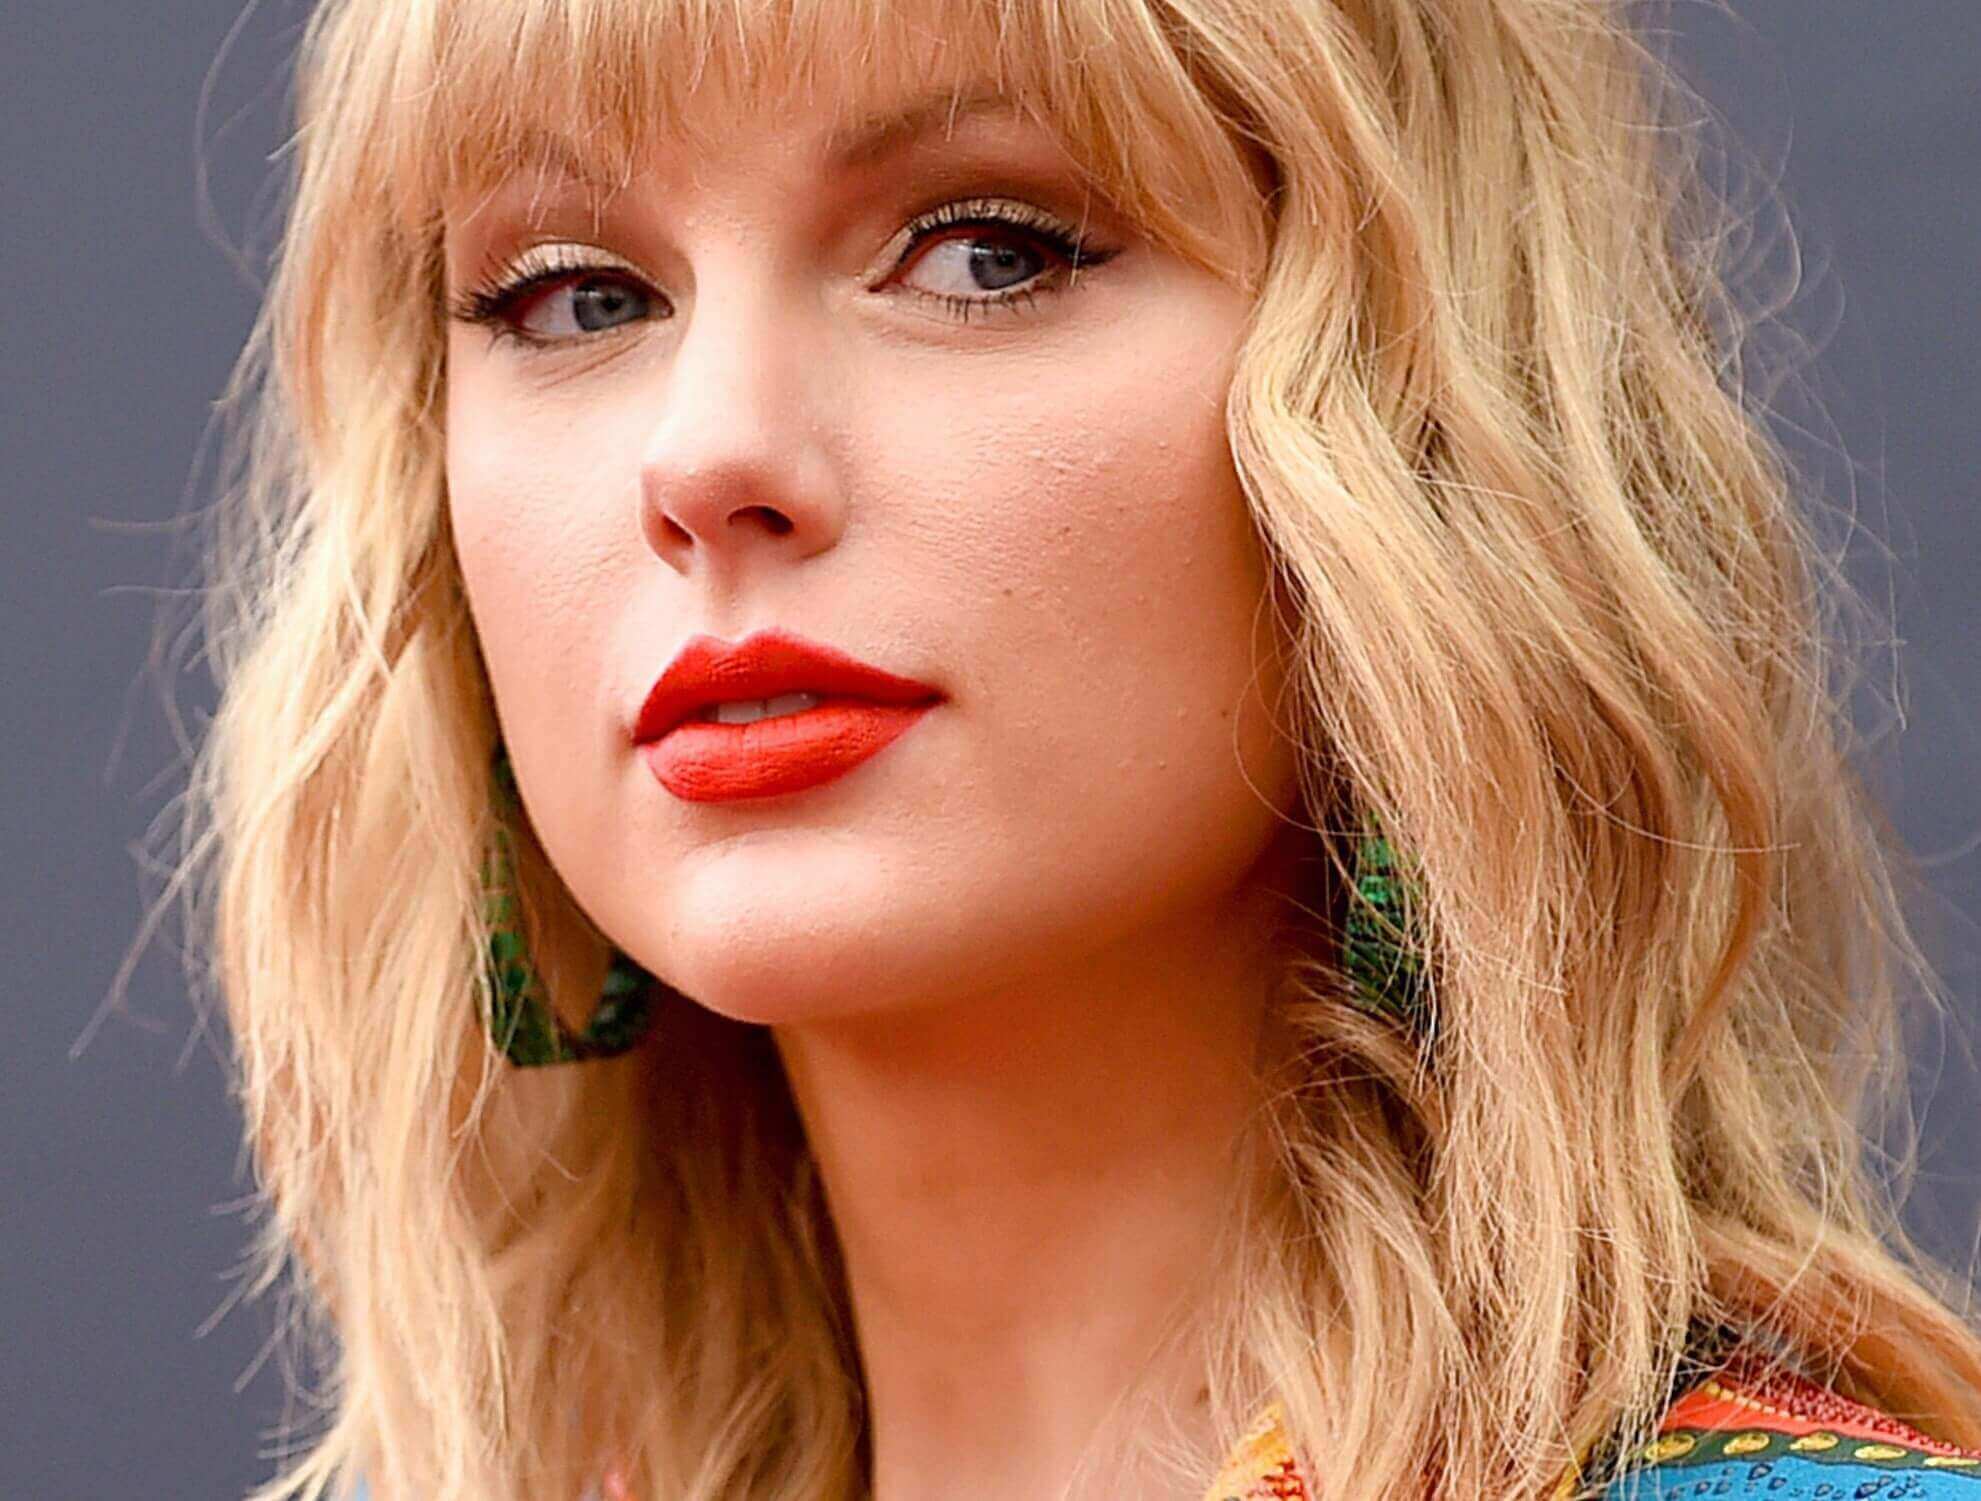 Taylor Swift wearing lipstick